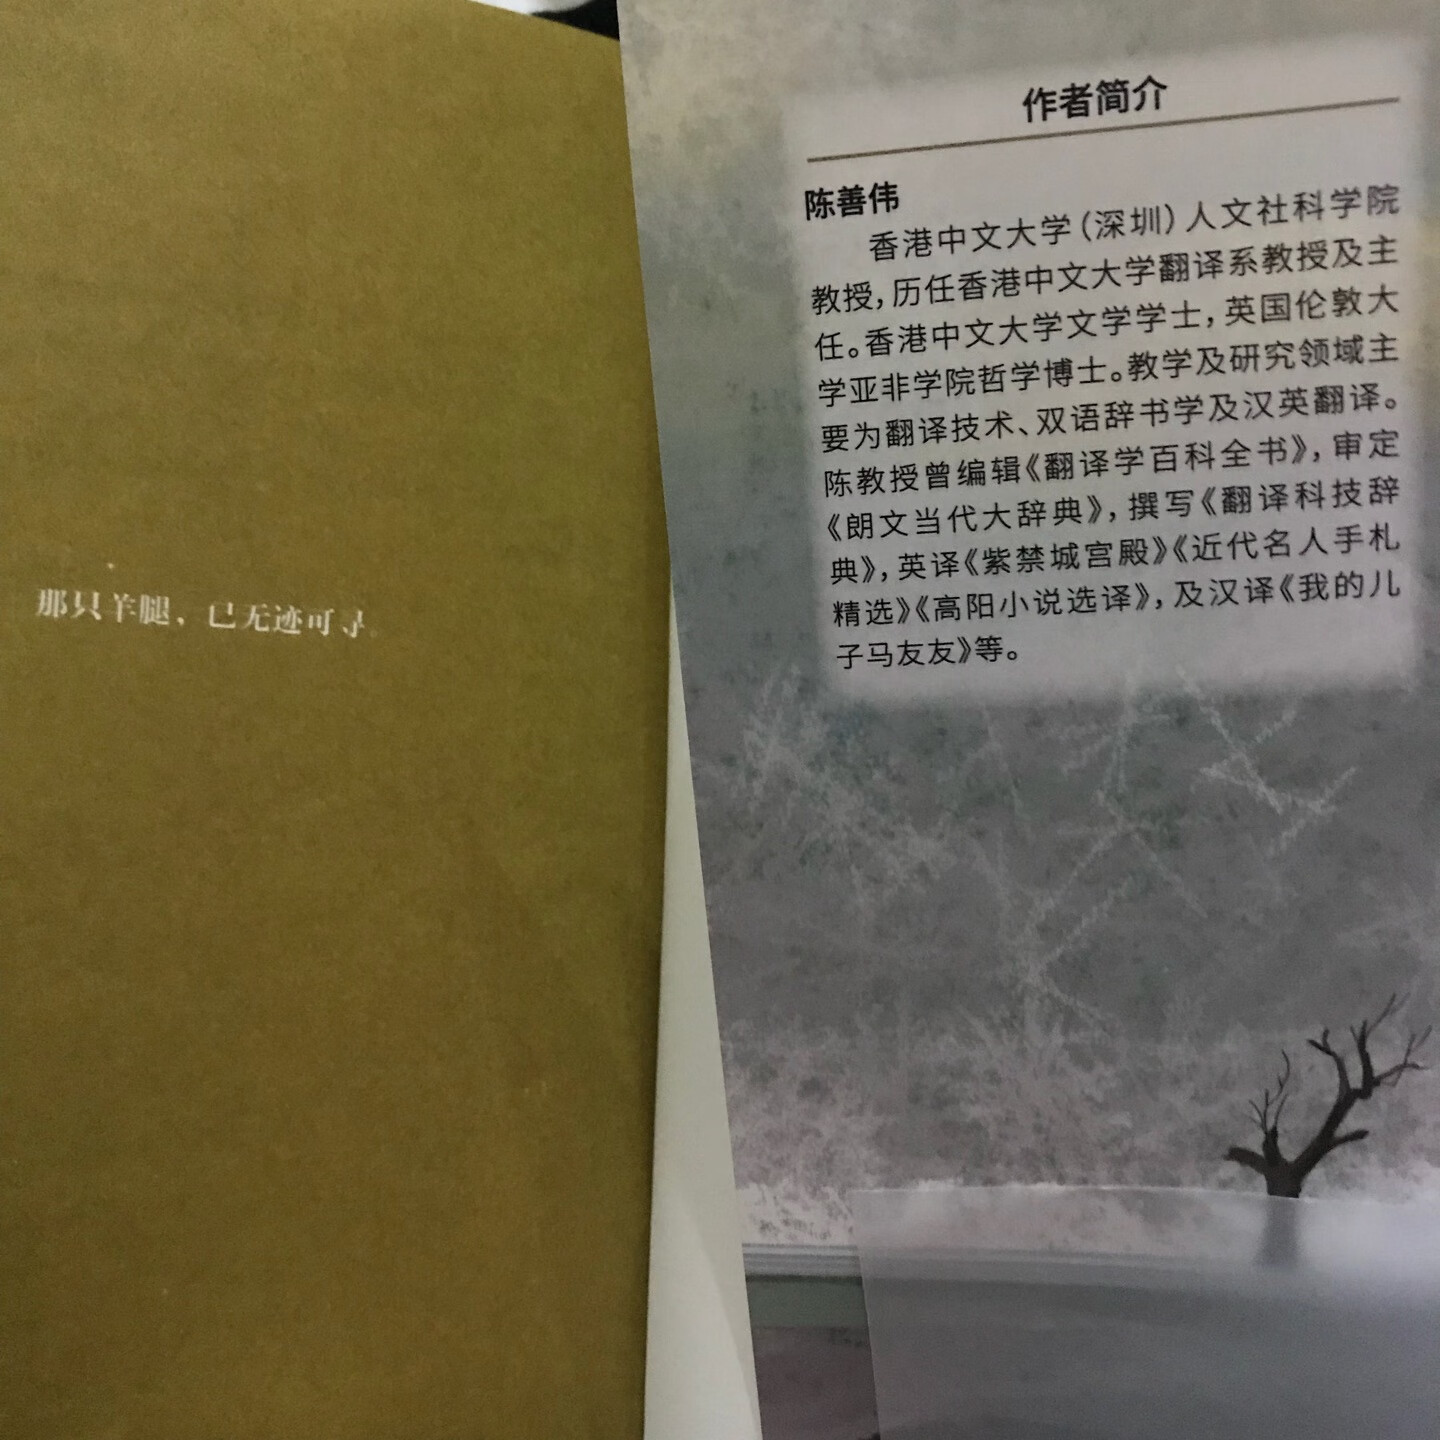 一本超好看的悬疑小说，主编还是香港中文大学的翻译教授，整套书都非常好。